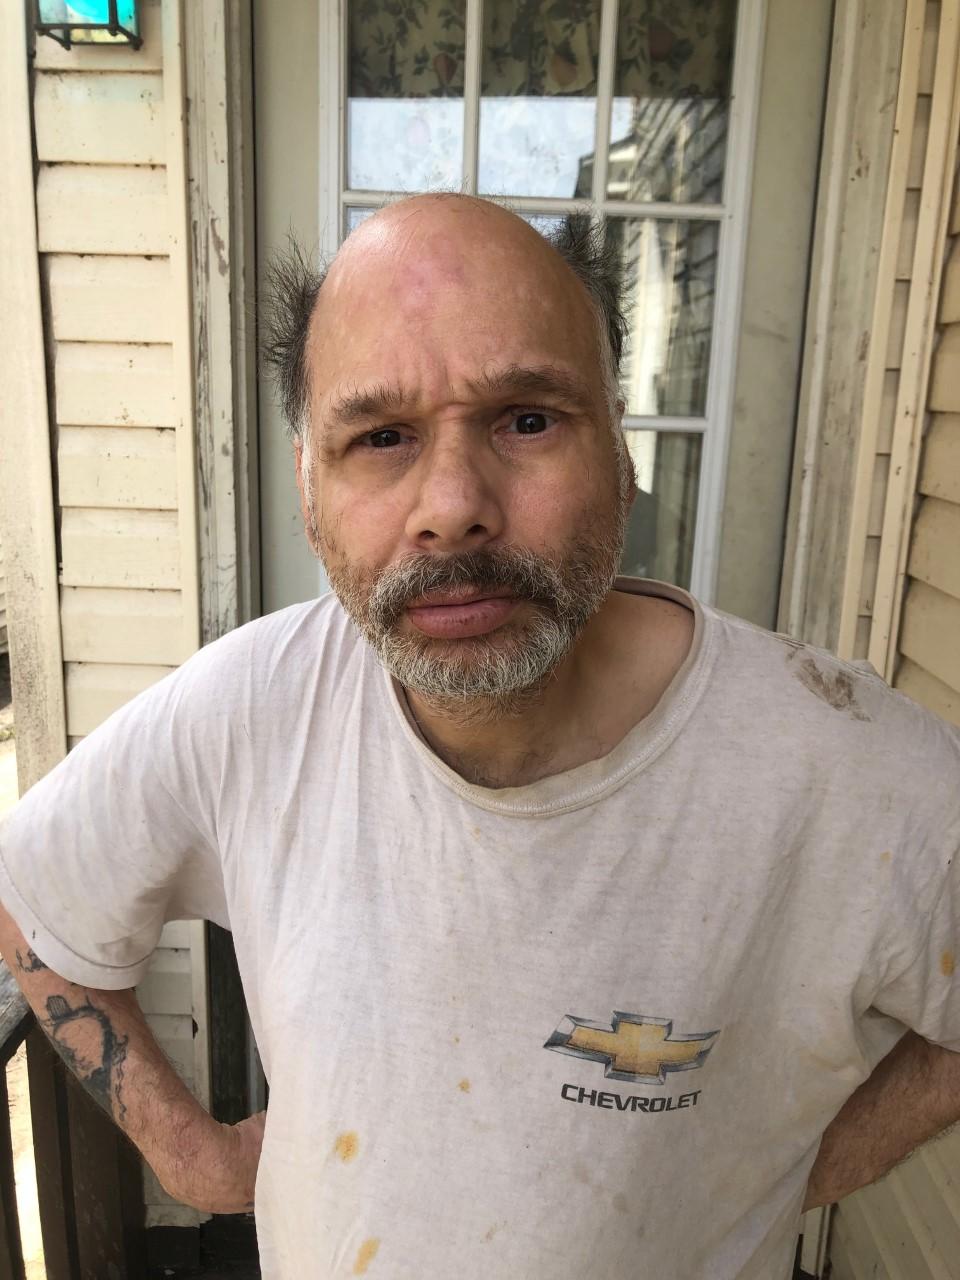 Angelo J Caracci Sex Offender In Oswego Ny 13126 Ny3770